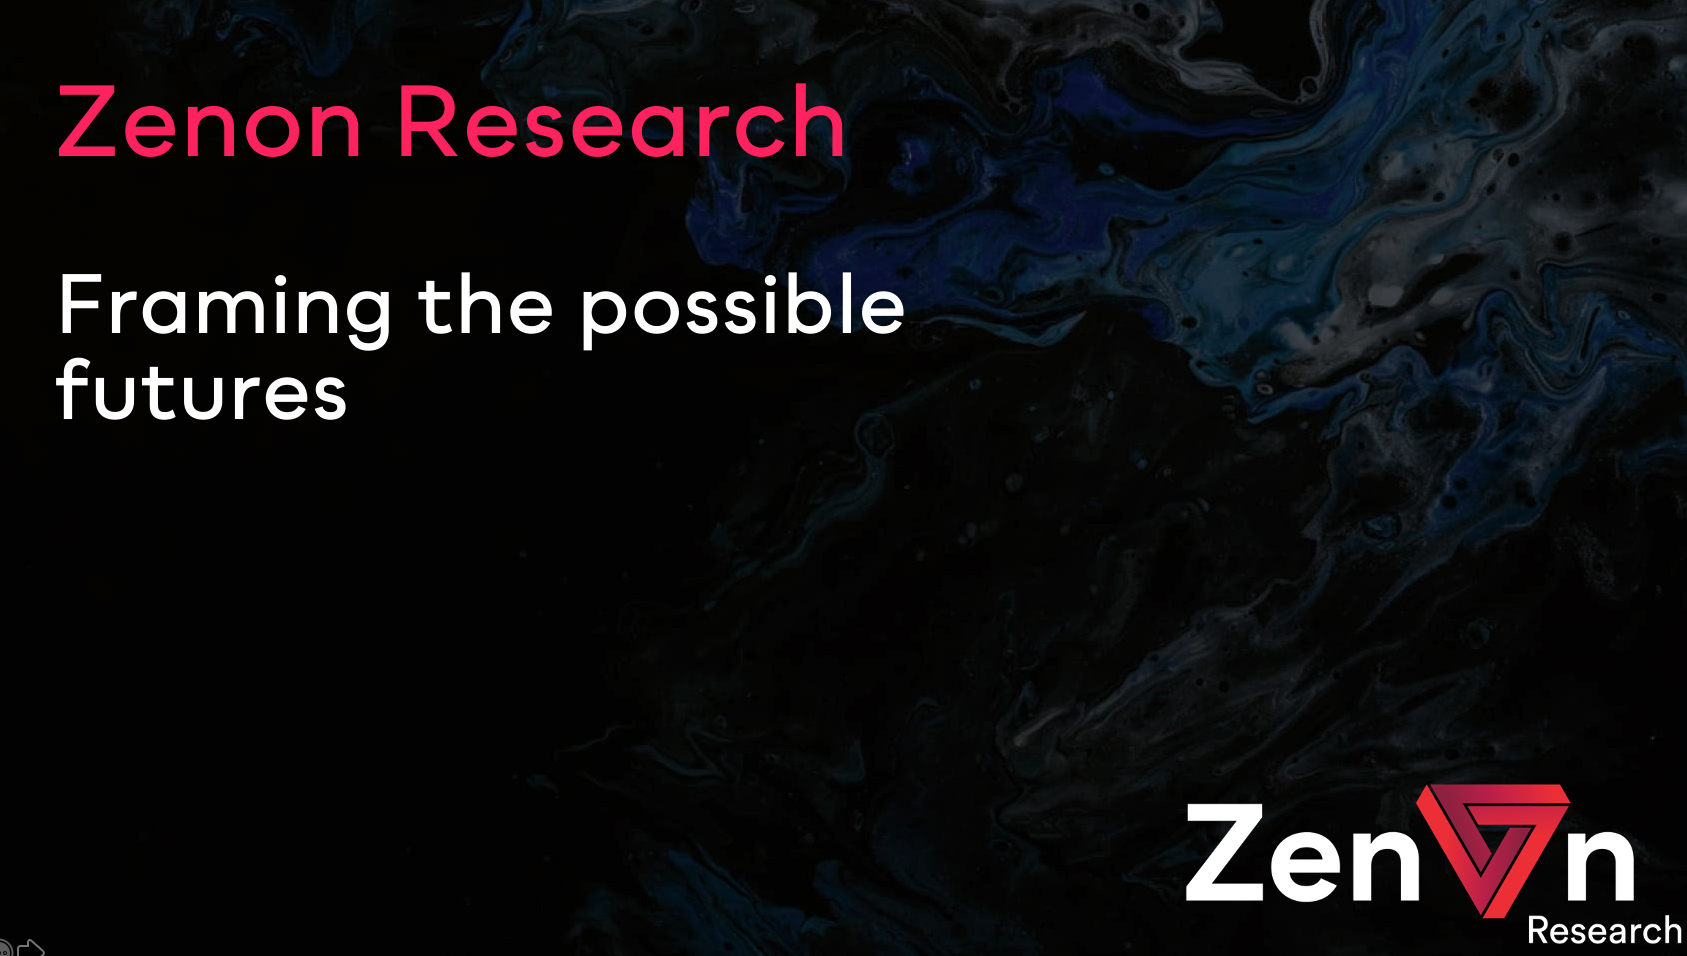 Bannière de Zenon Research